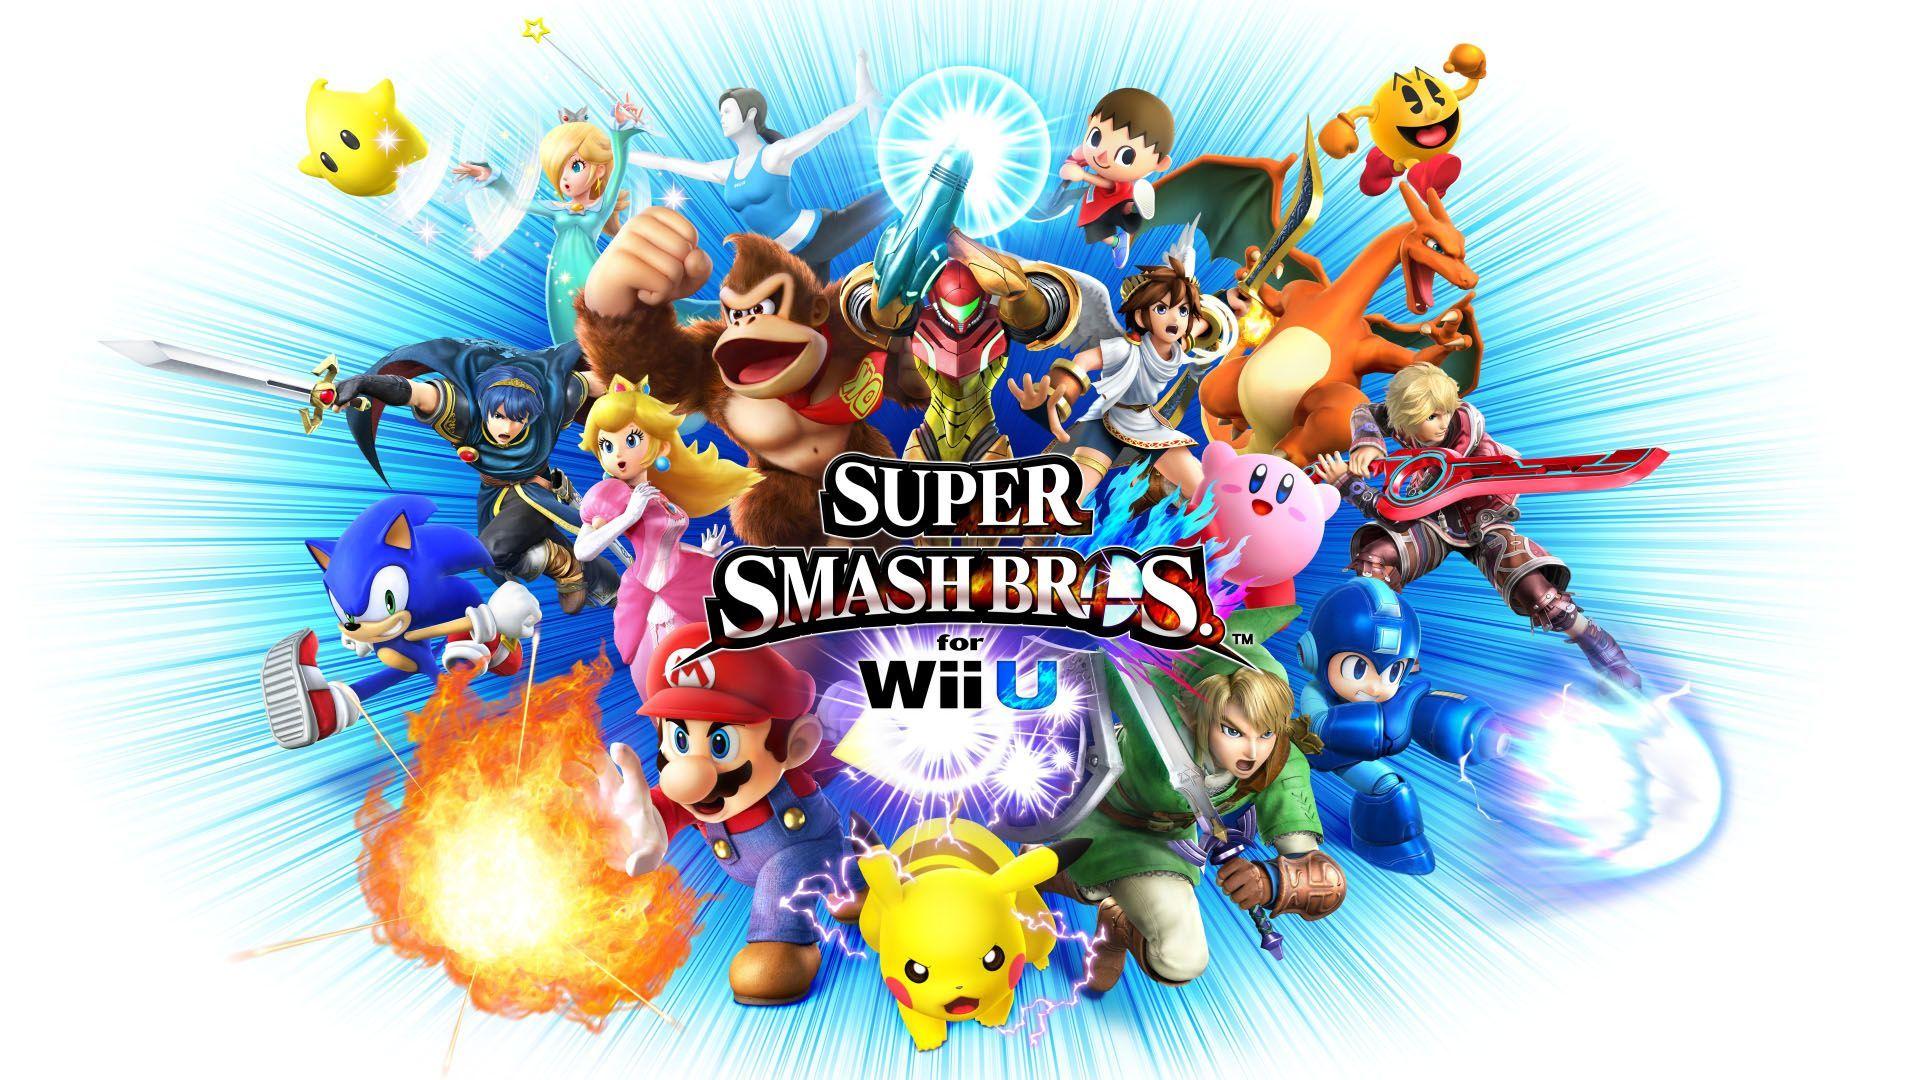 Super Smash Bros Wii U Wallpaper Wallpaper 1080p. Smash bros wii, Super smash bros characters, Smash bros